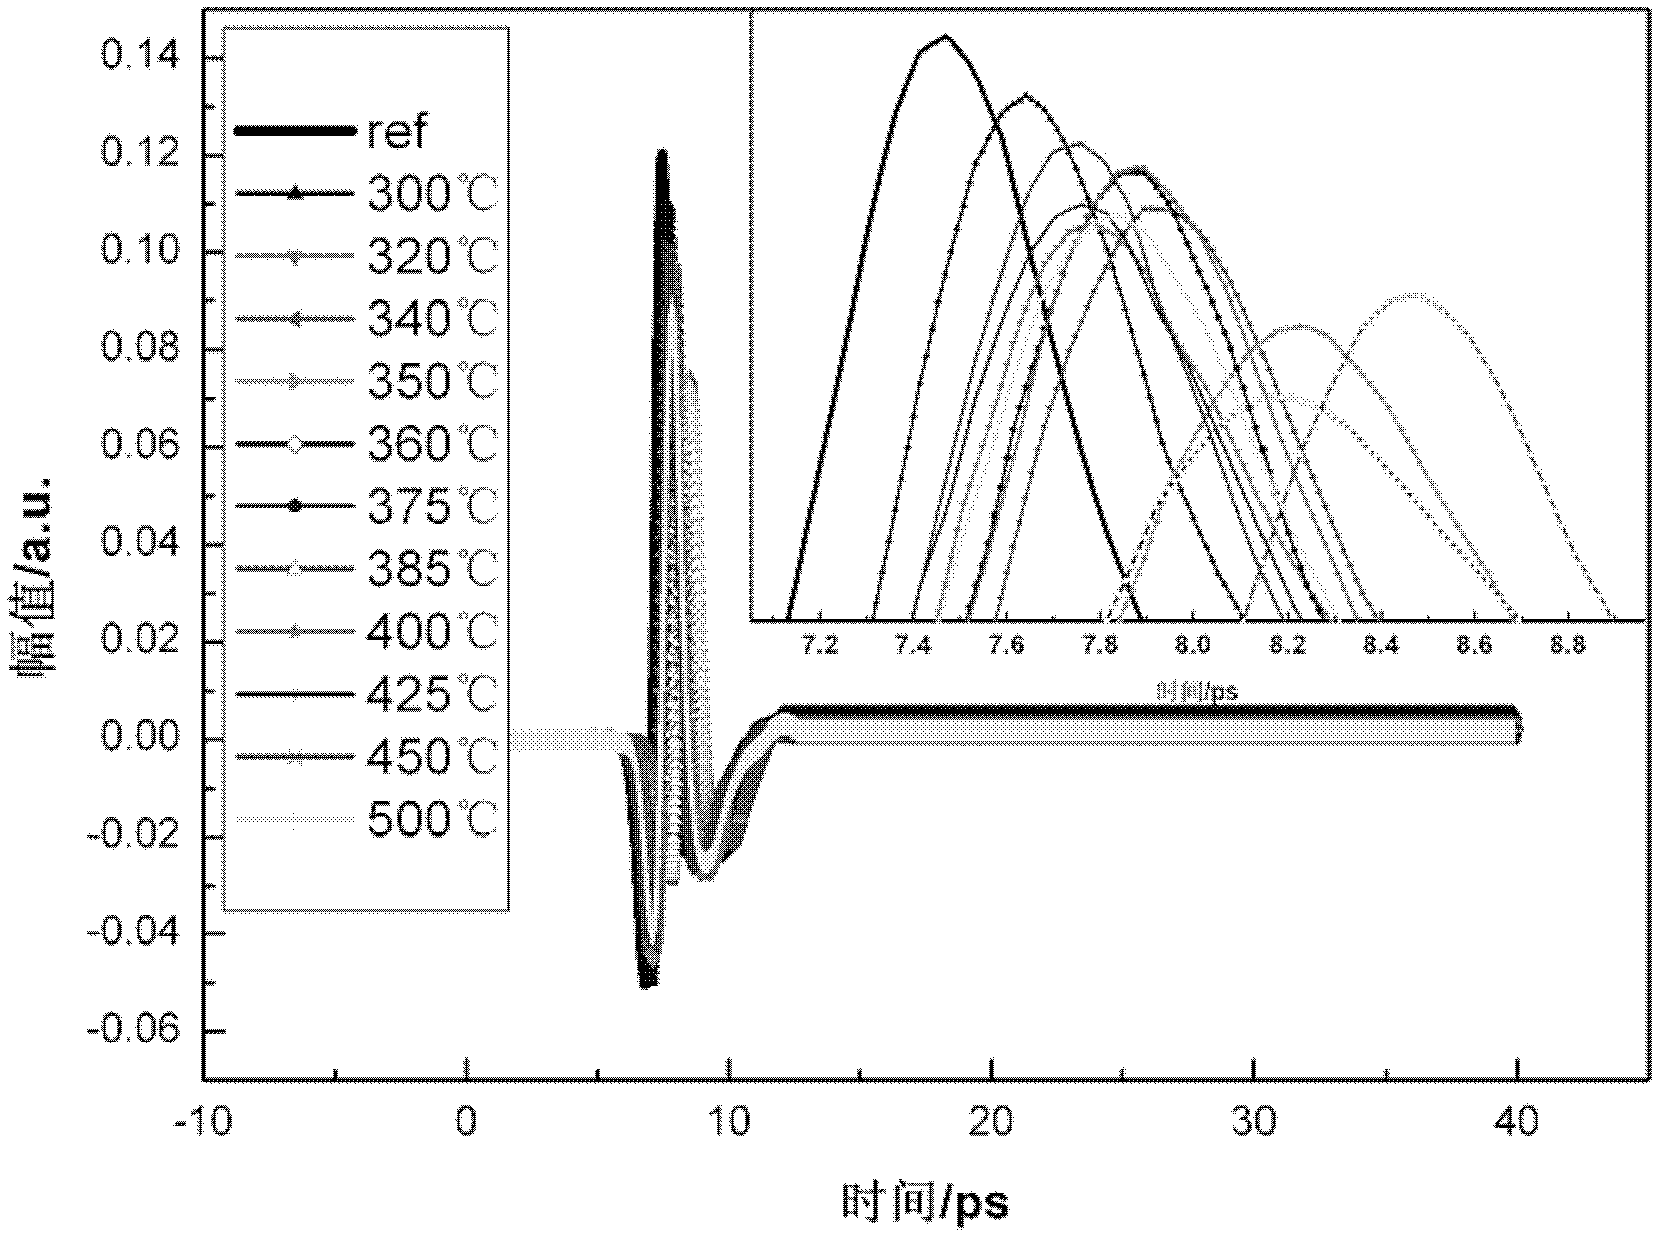 Nondestructive testing analytical method for kerogen based on terahertz time-domain spectroscopy